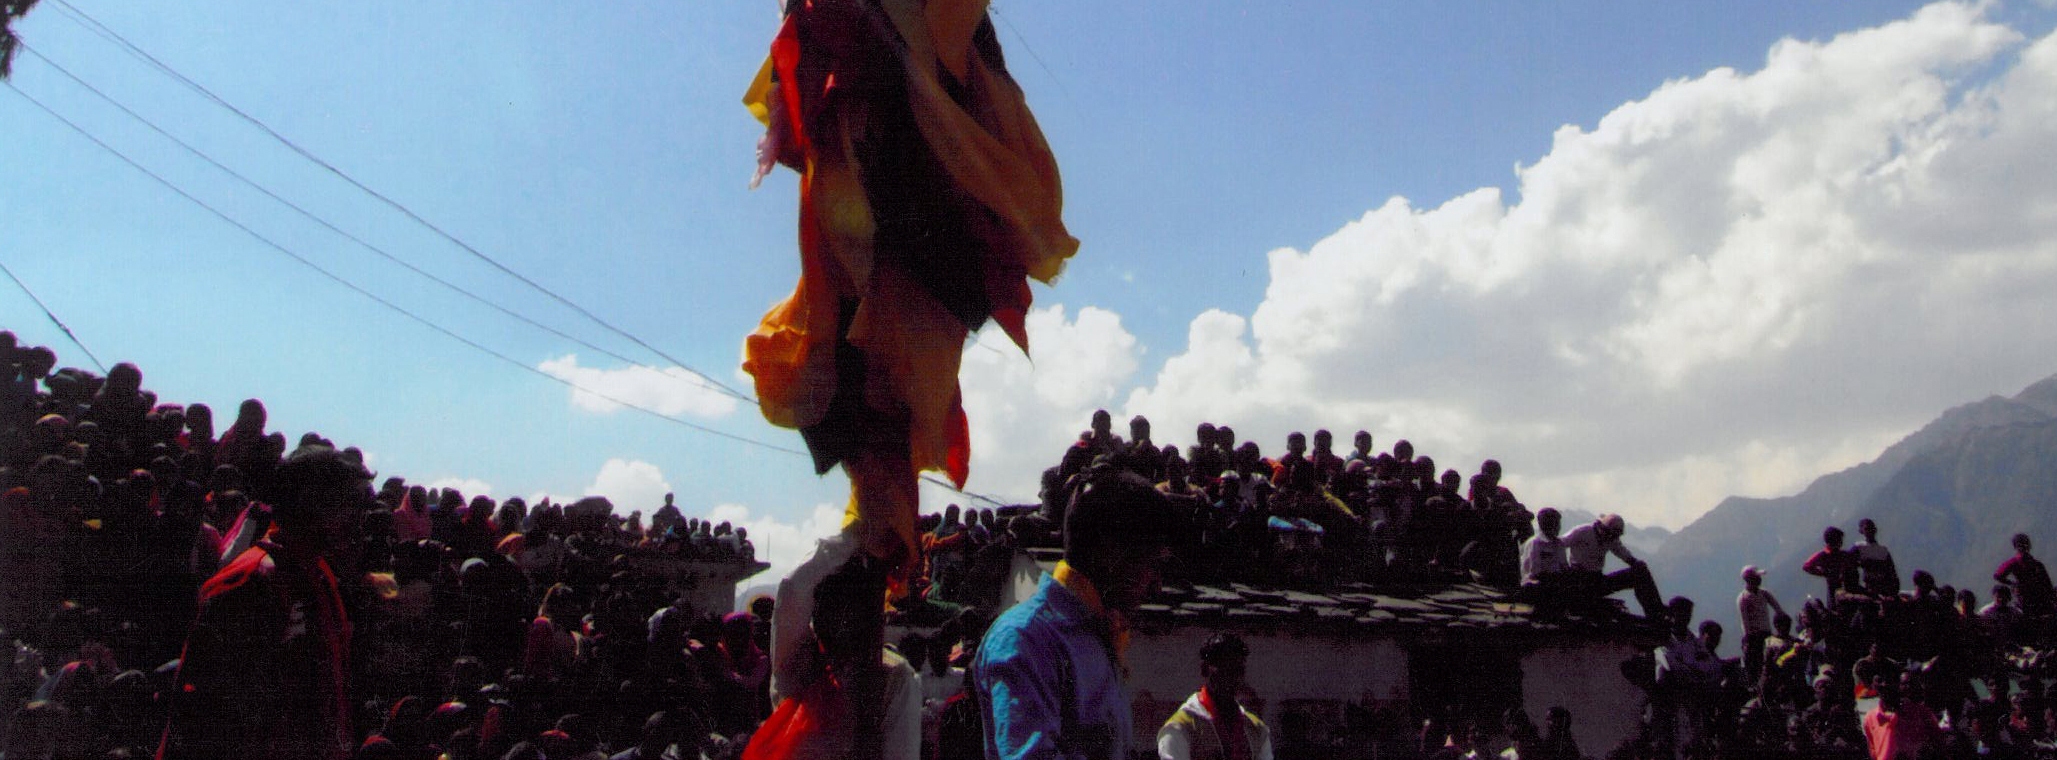 रम्माण- गढ़वाल हिमालय के धार्मिक उत्‍सव और परंपरा का मंचन